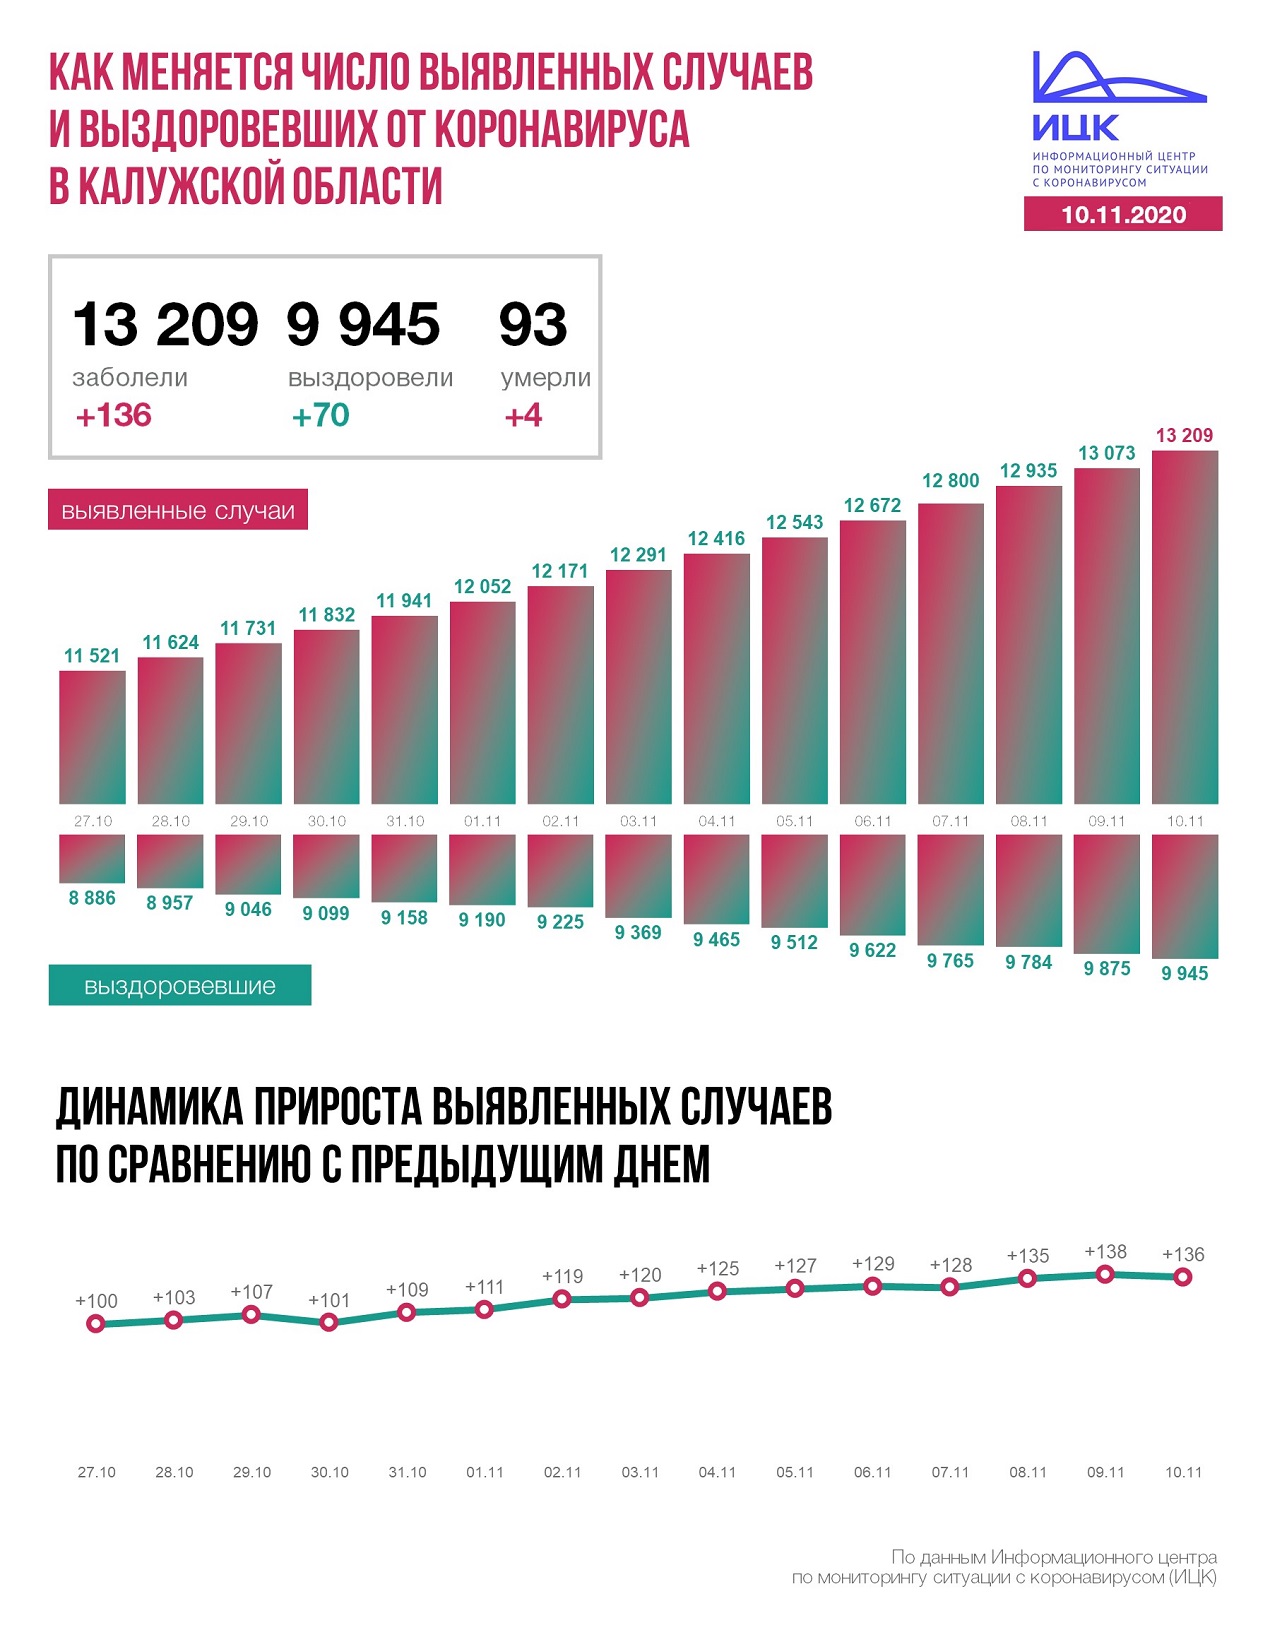 Официальные данные по коронавирусу в Калужской области на 10 ноября 2020 года.